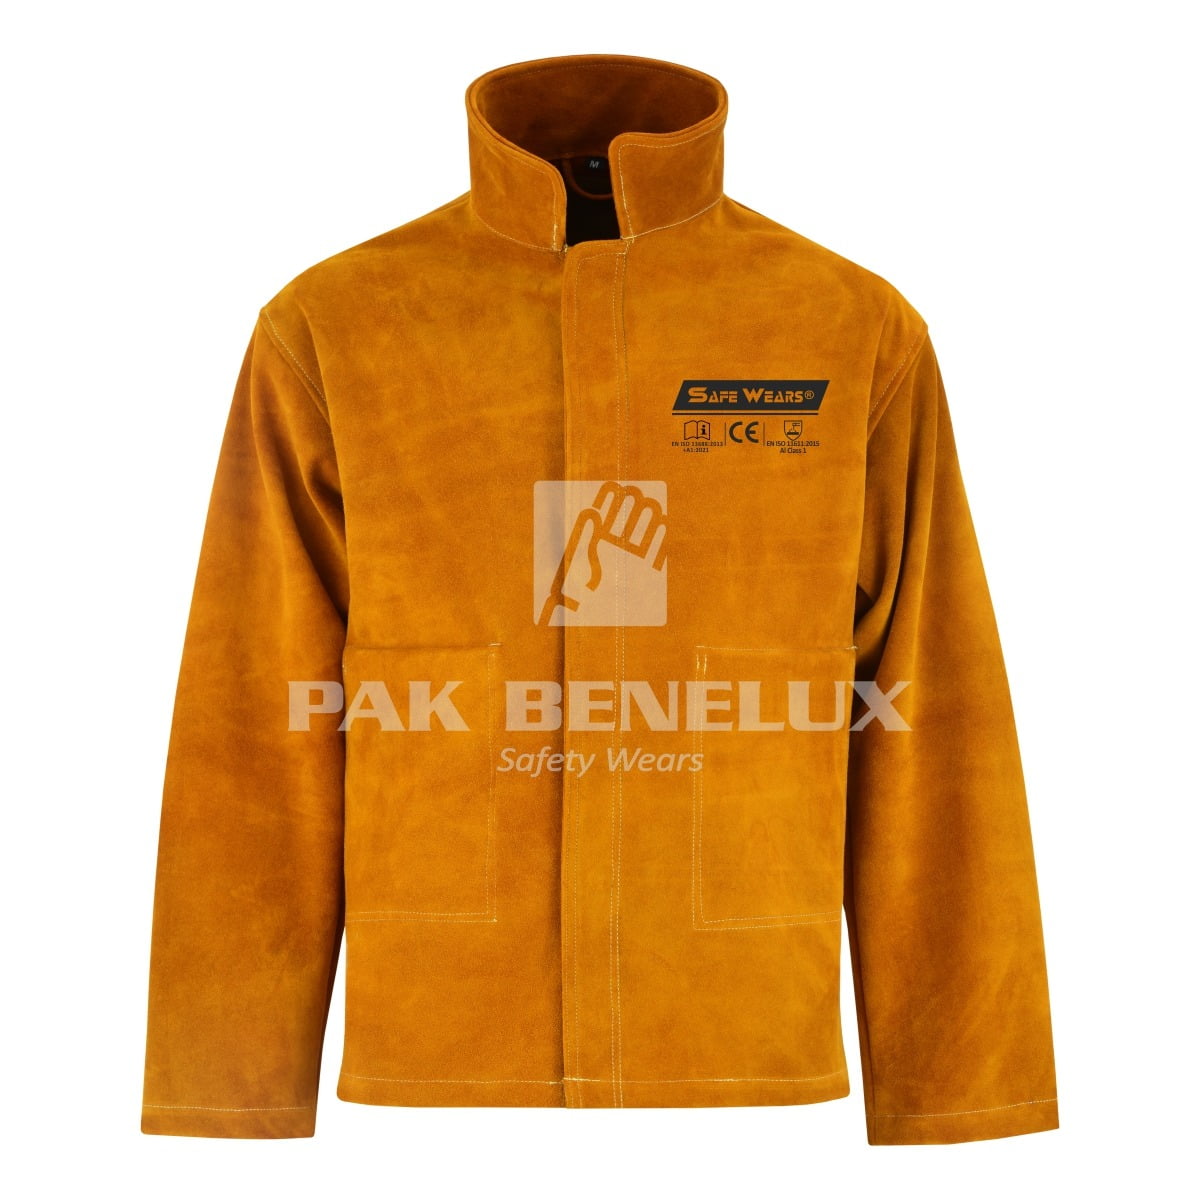 Welding Jacket Manufacturer in Pakistan